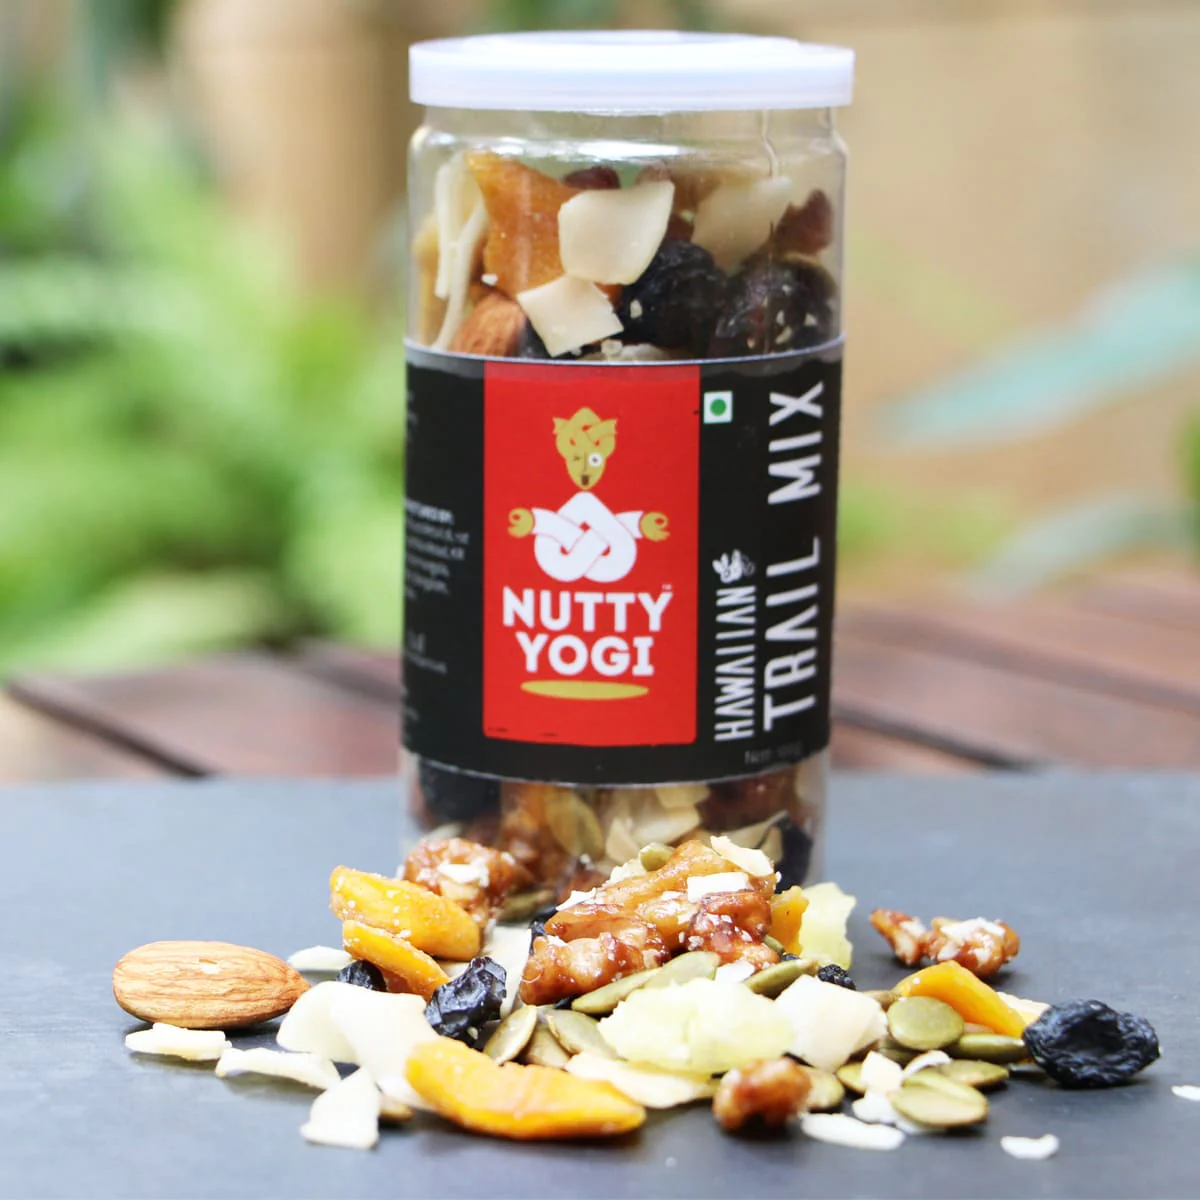 Product: Nutty Yogi Hawaiian Trail Mix